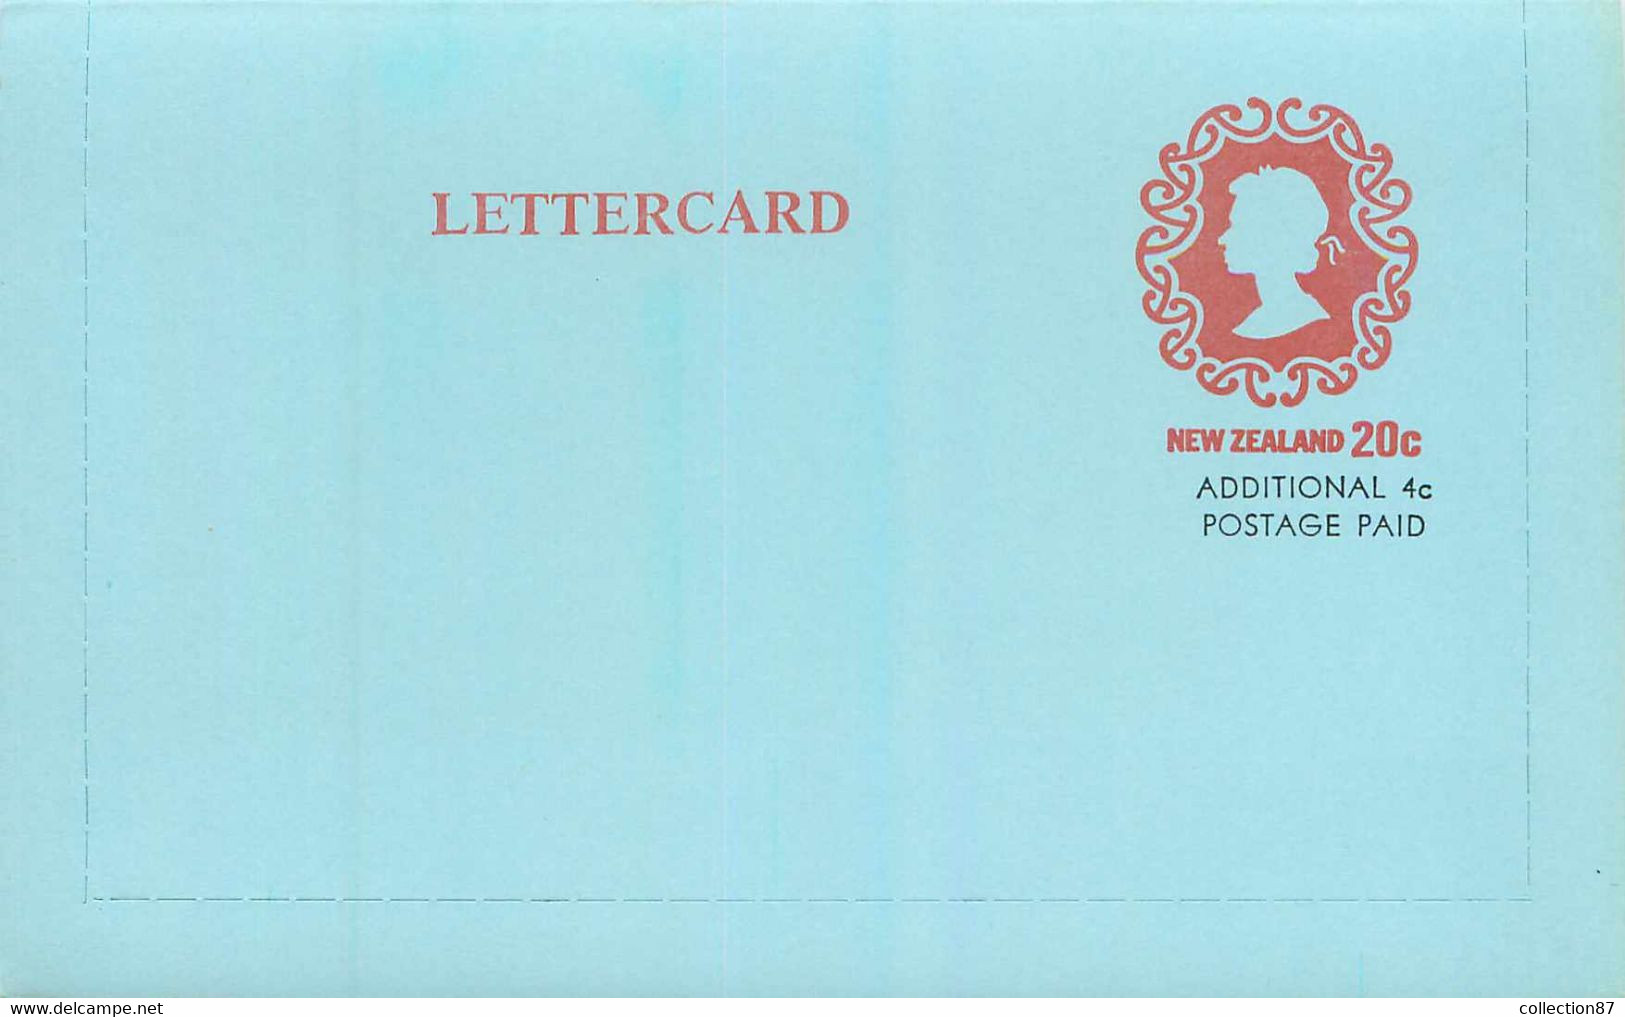 NEW ZEALAND - LETTERCARD 20c Additional 4c Postage Paid < ENTIER POSTAL NOUVELLE ZELANDE 20c + 4 Cent - QUEEN ELISABETH - Ganzsachen